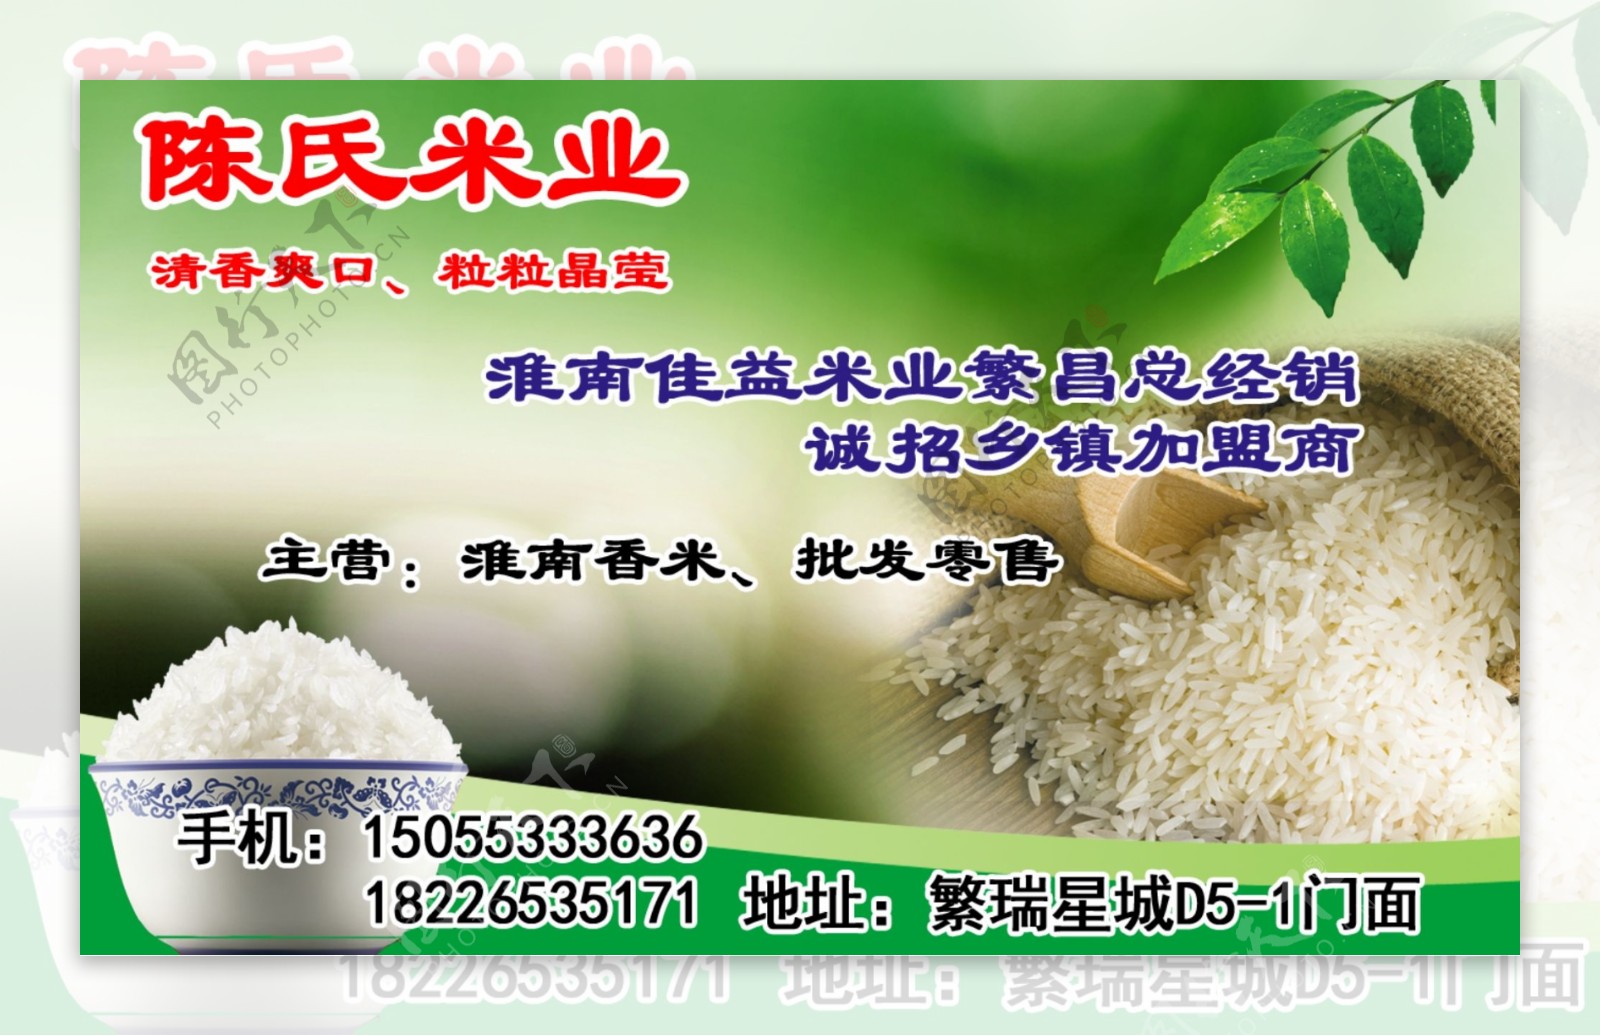 陈氏米业广告图片